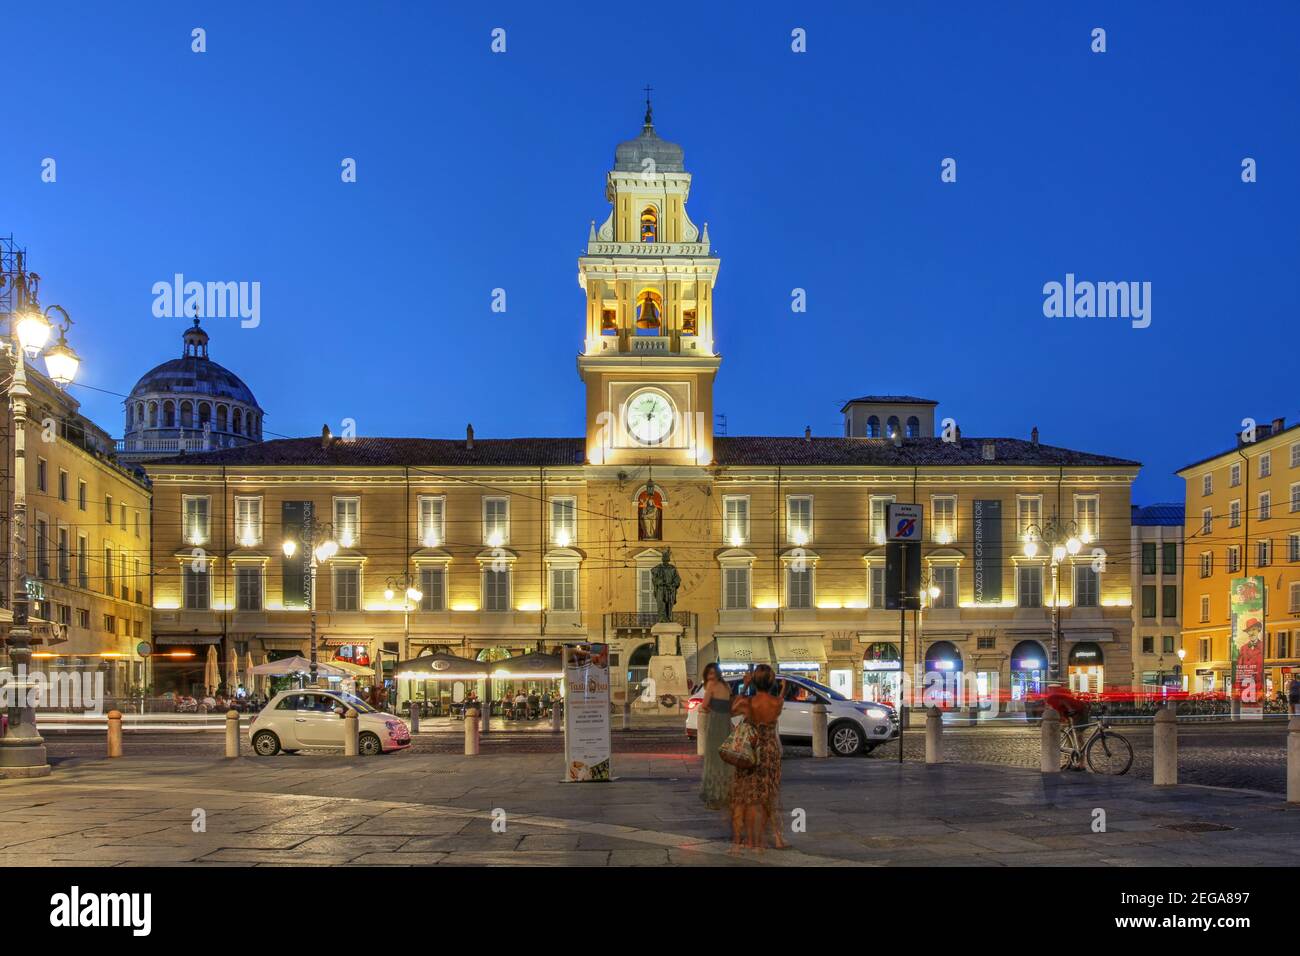 Straßenszene in Parma, Italien, mit dem Palazzo del Guvernatore (Palast von Guvernor) auf der Piazza Garibaldi, dem Zentrum der Stadt seit der römerzeit. Stockfoto